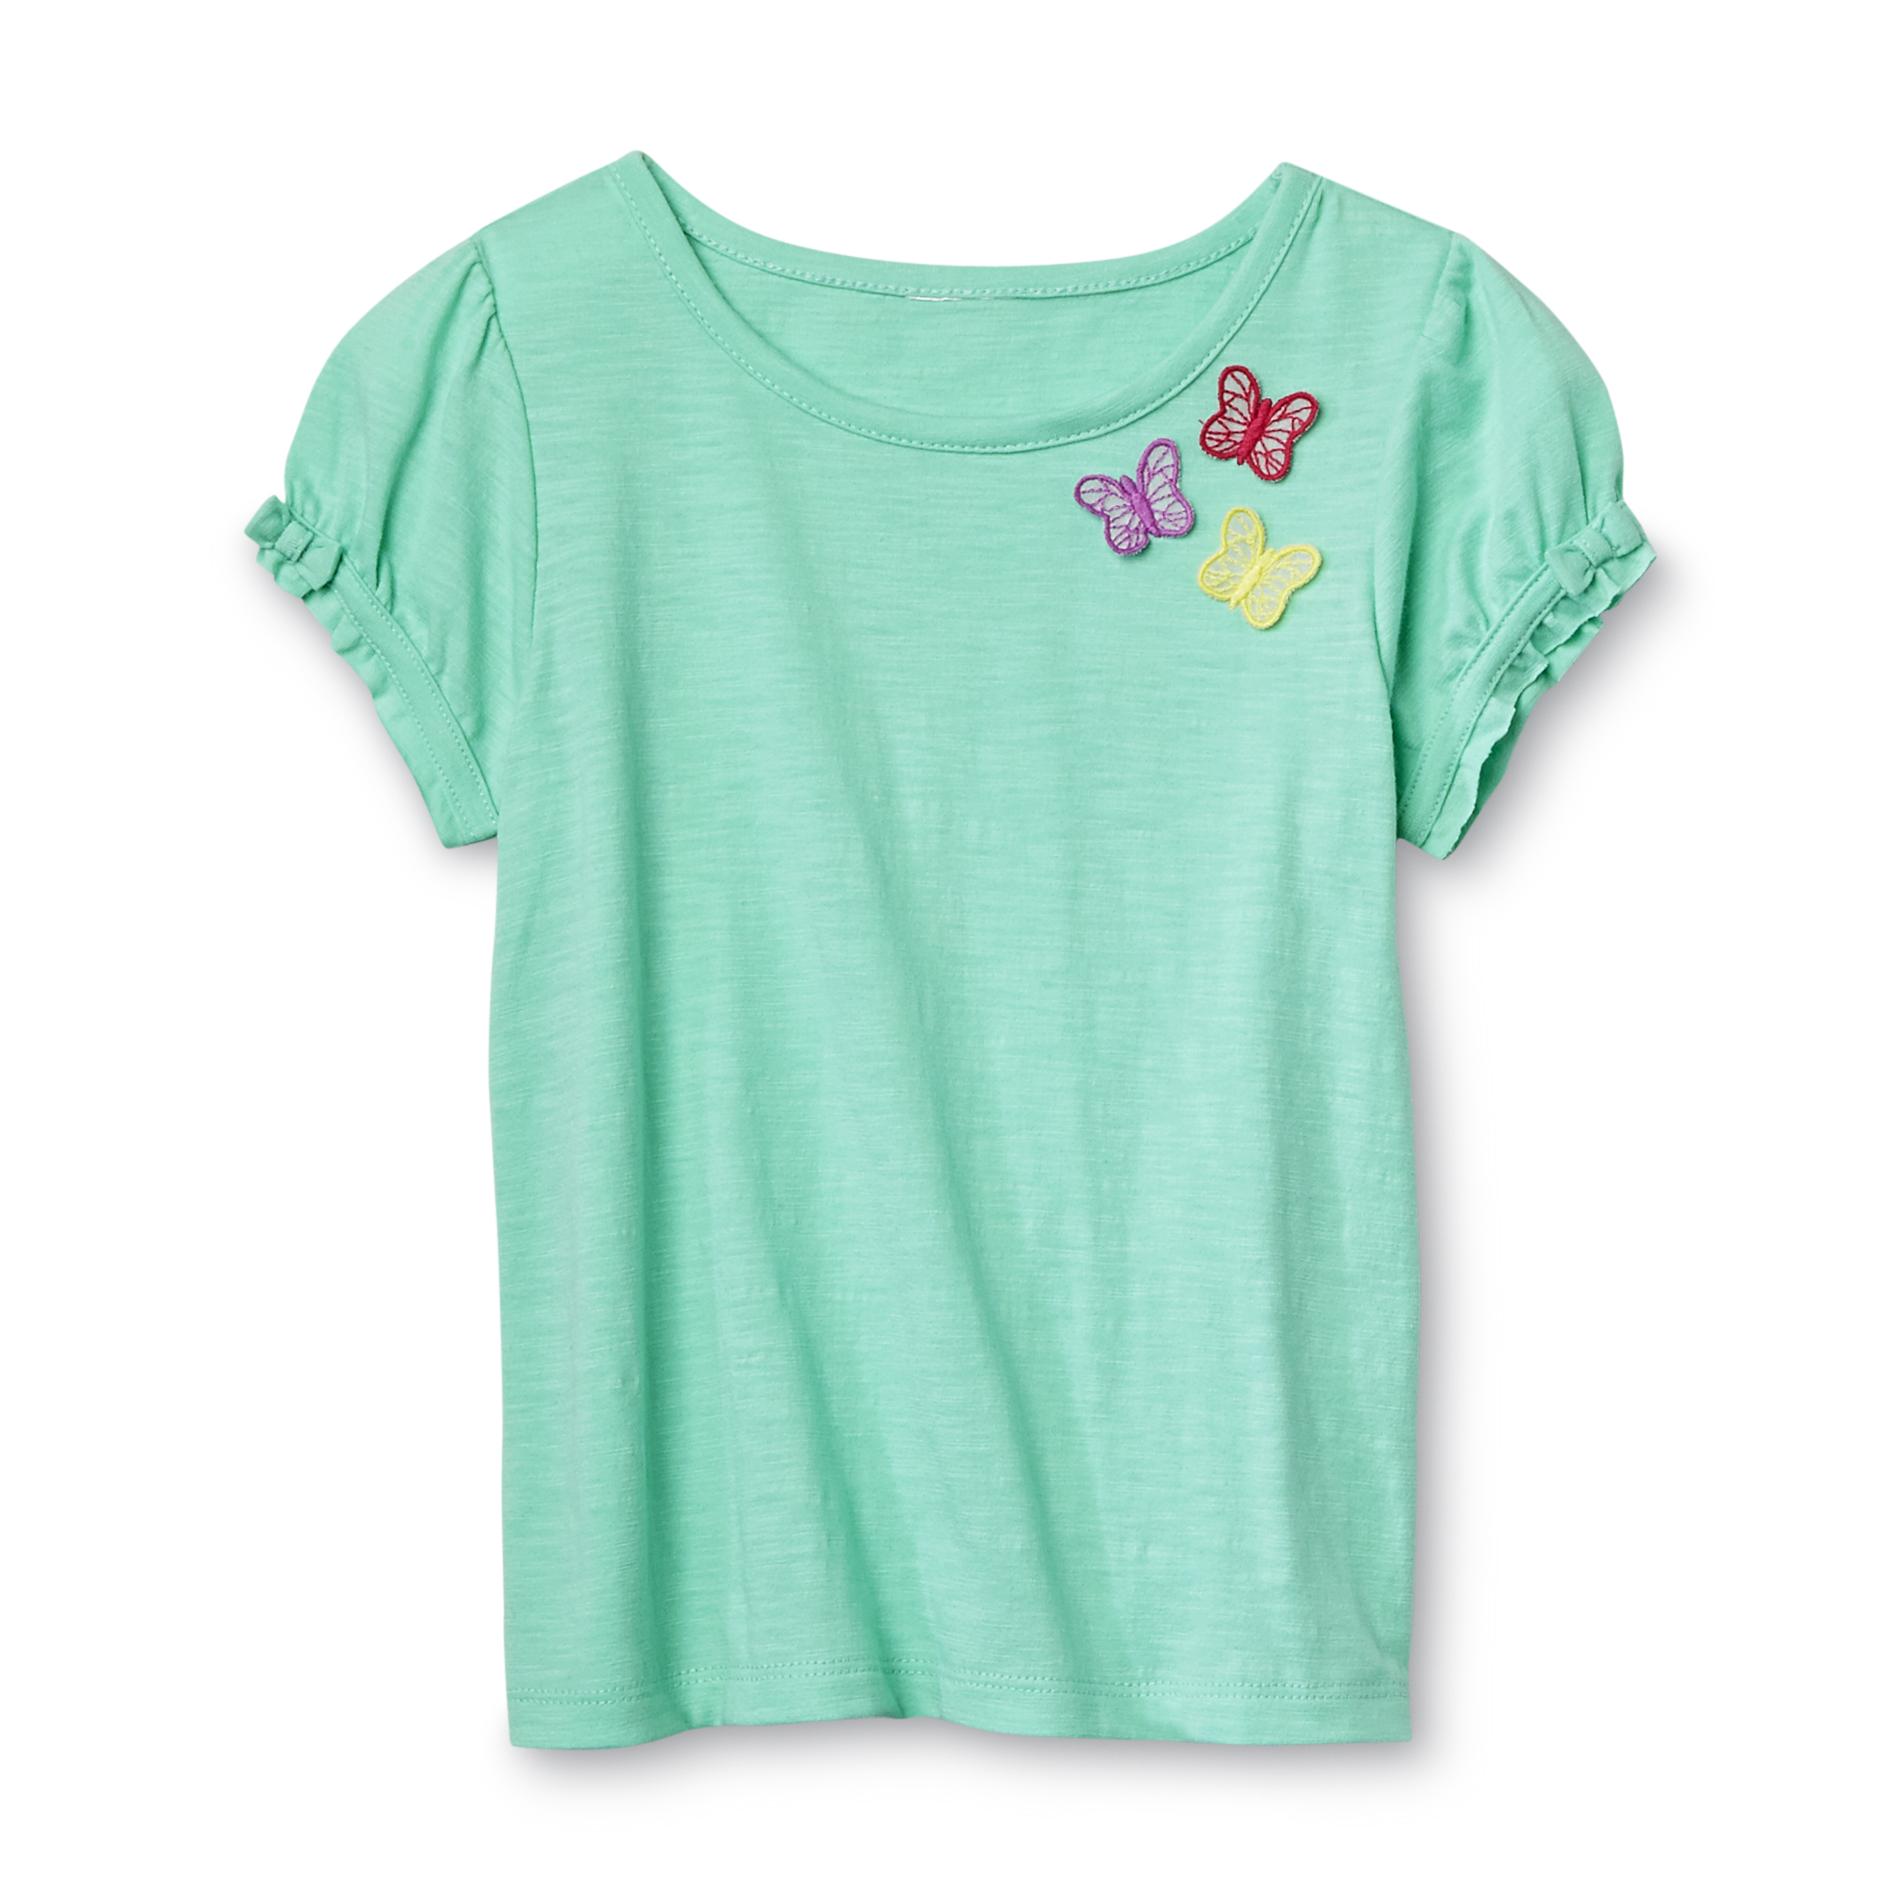 Toughskins Toddler Girl's Puff-Sleeve Top - Butterflies